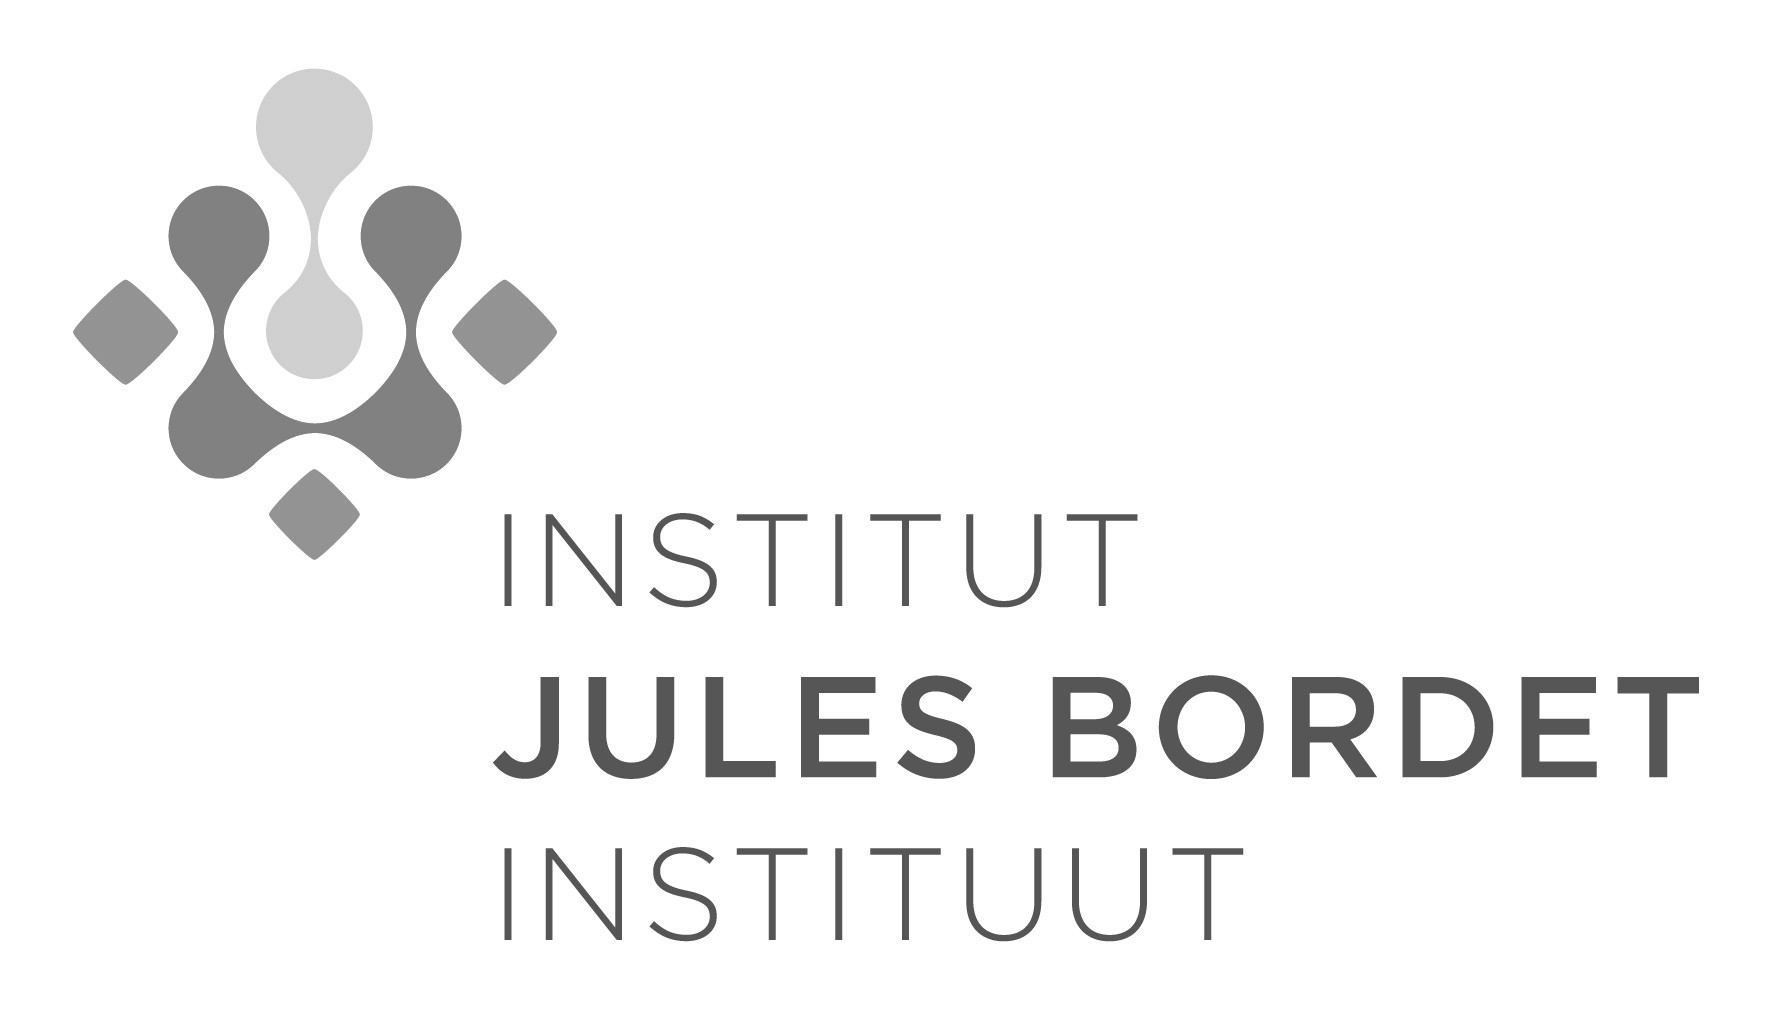 Institut Jules Bordet